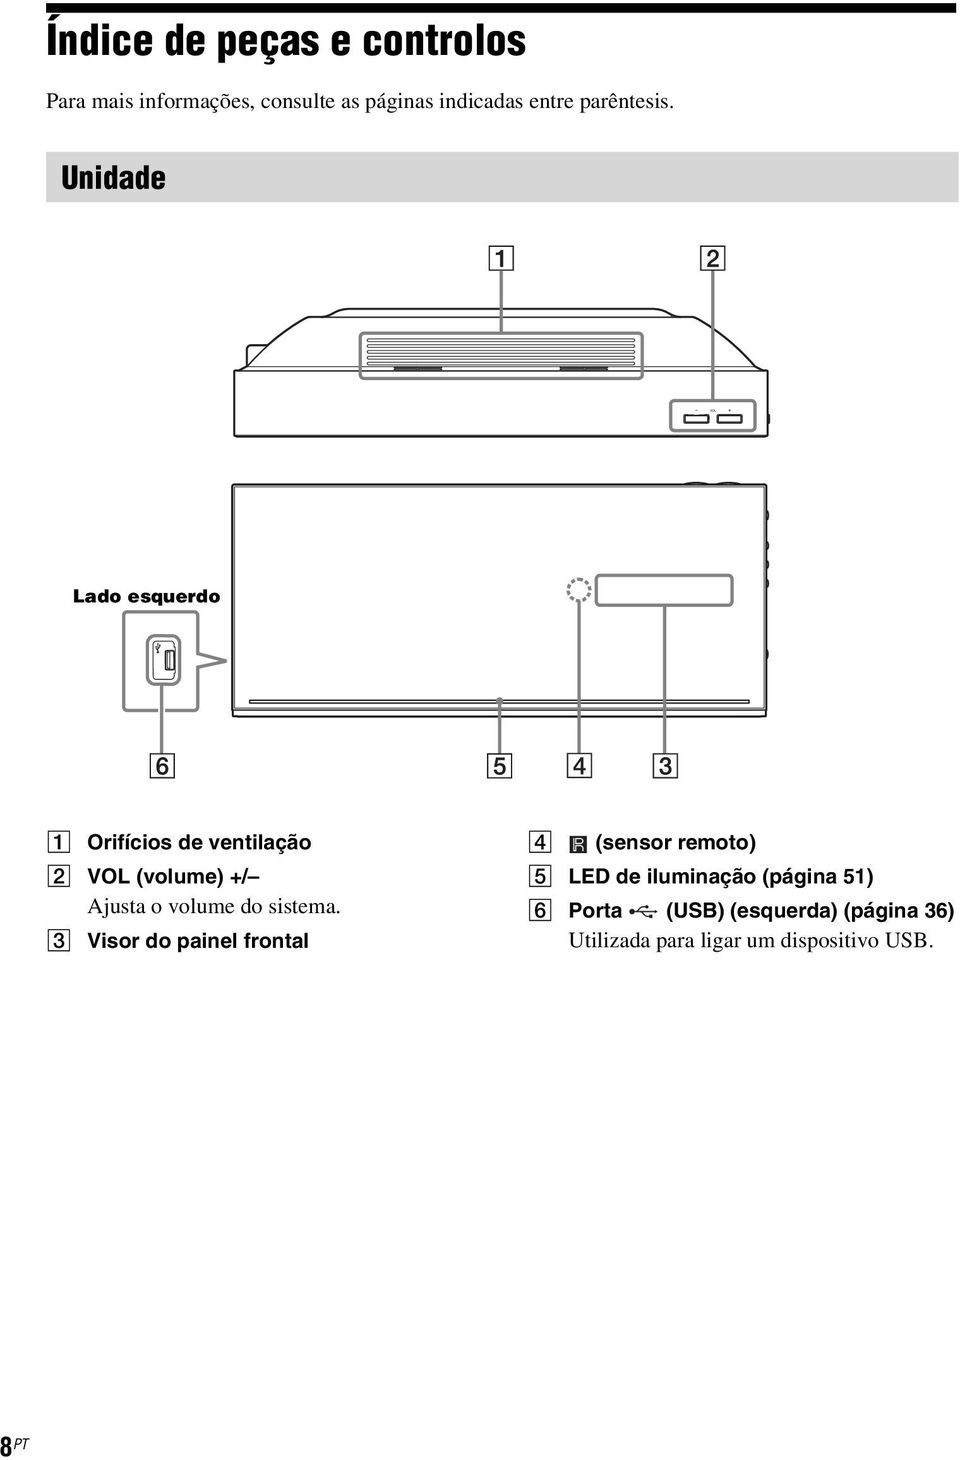 Unidade Lado esquerdo A Orifícios de ventilação B VOL (volume) +/ Ajusta o volume do